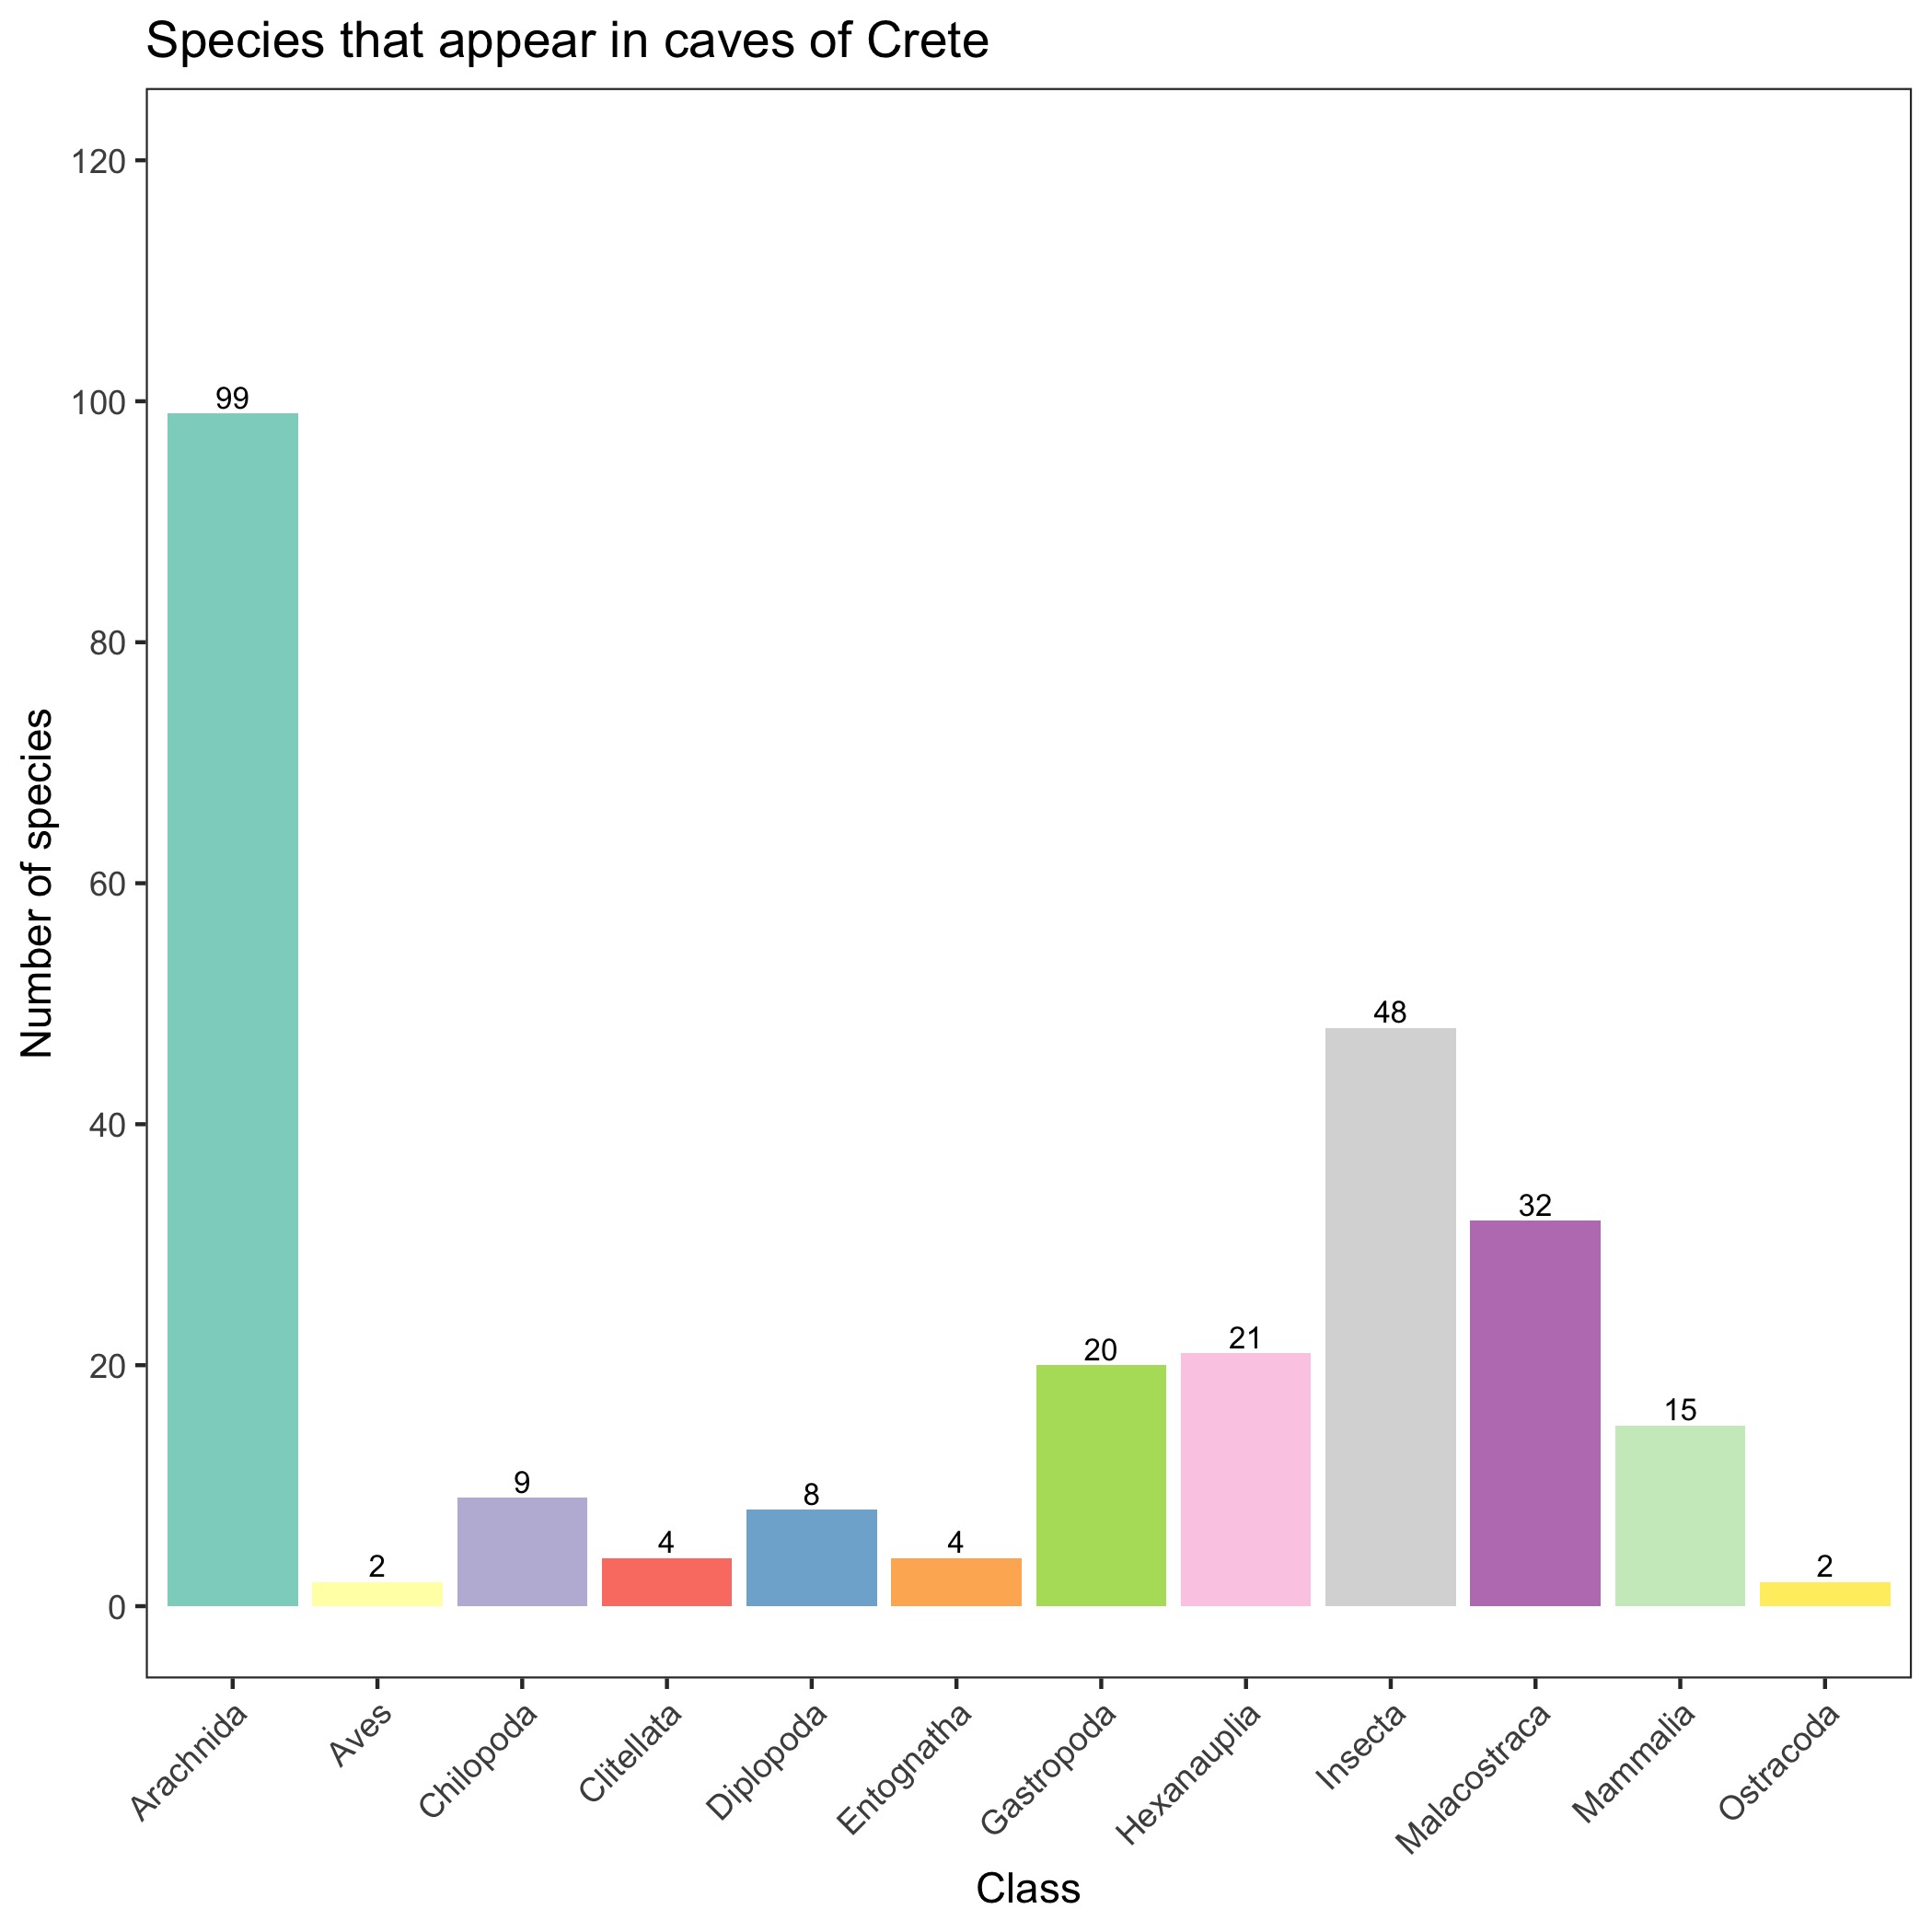 Species per class in Crete caves